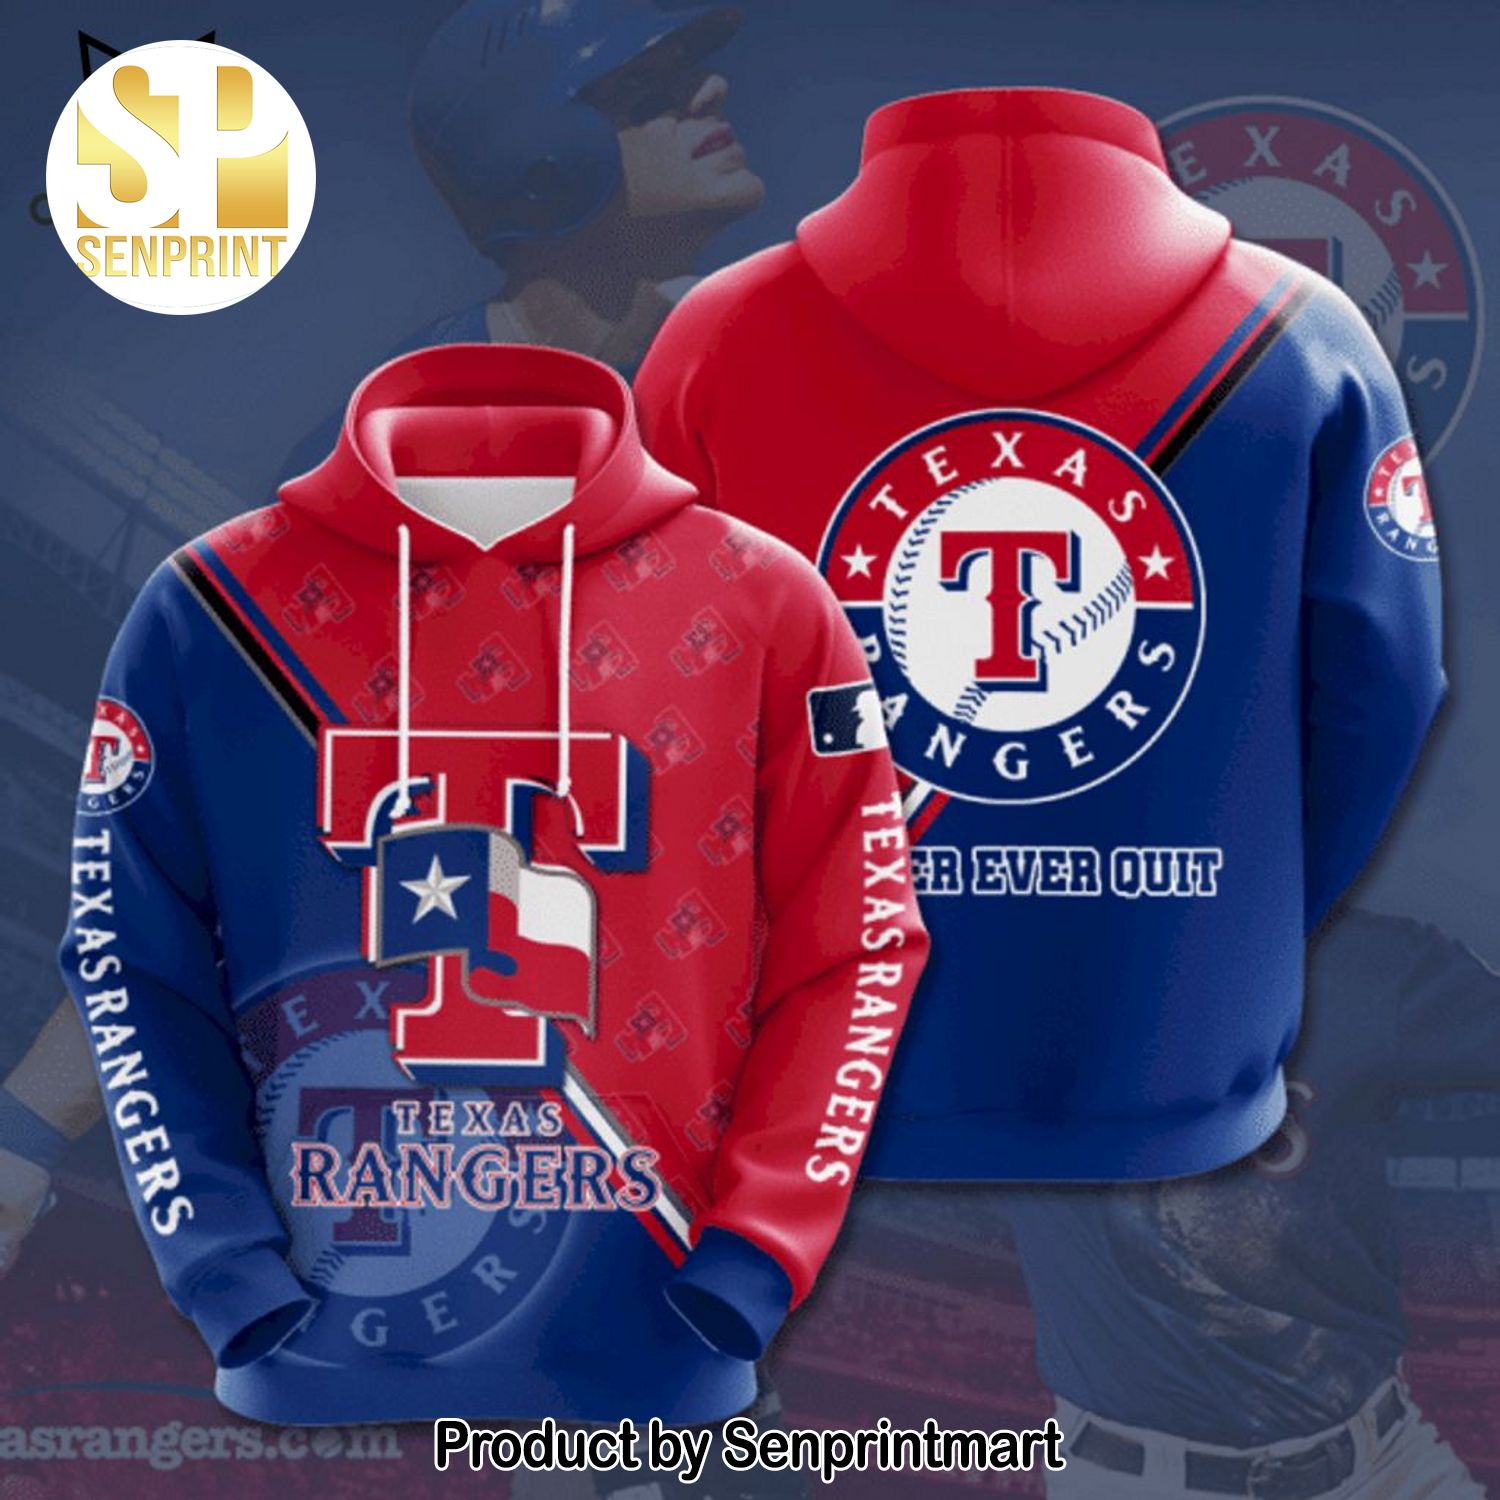 Texas Rangers Baseball Never Ever Quit Blue Red Design Full Printed Shirt